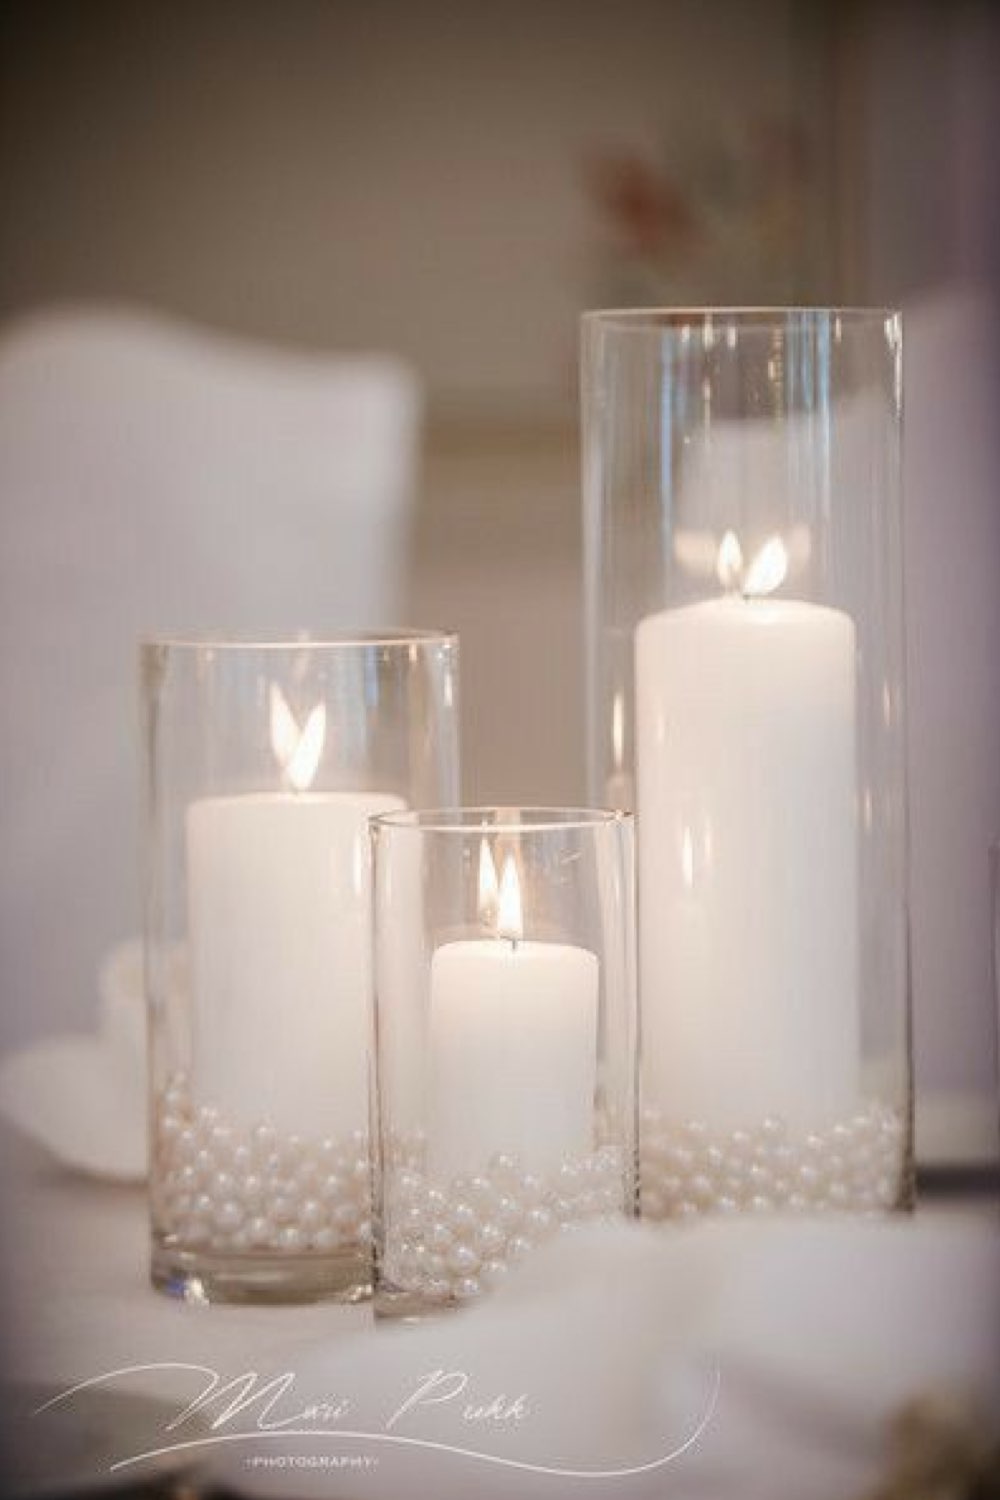  mariage en hiver deco a copier centre de table vase transparent bougies blanche perles